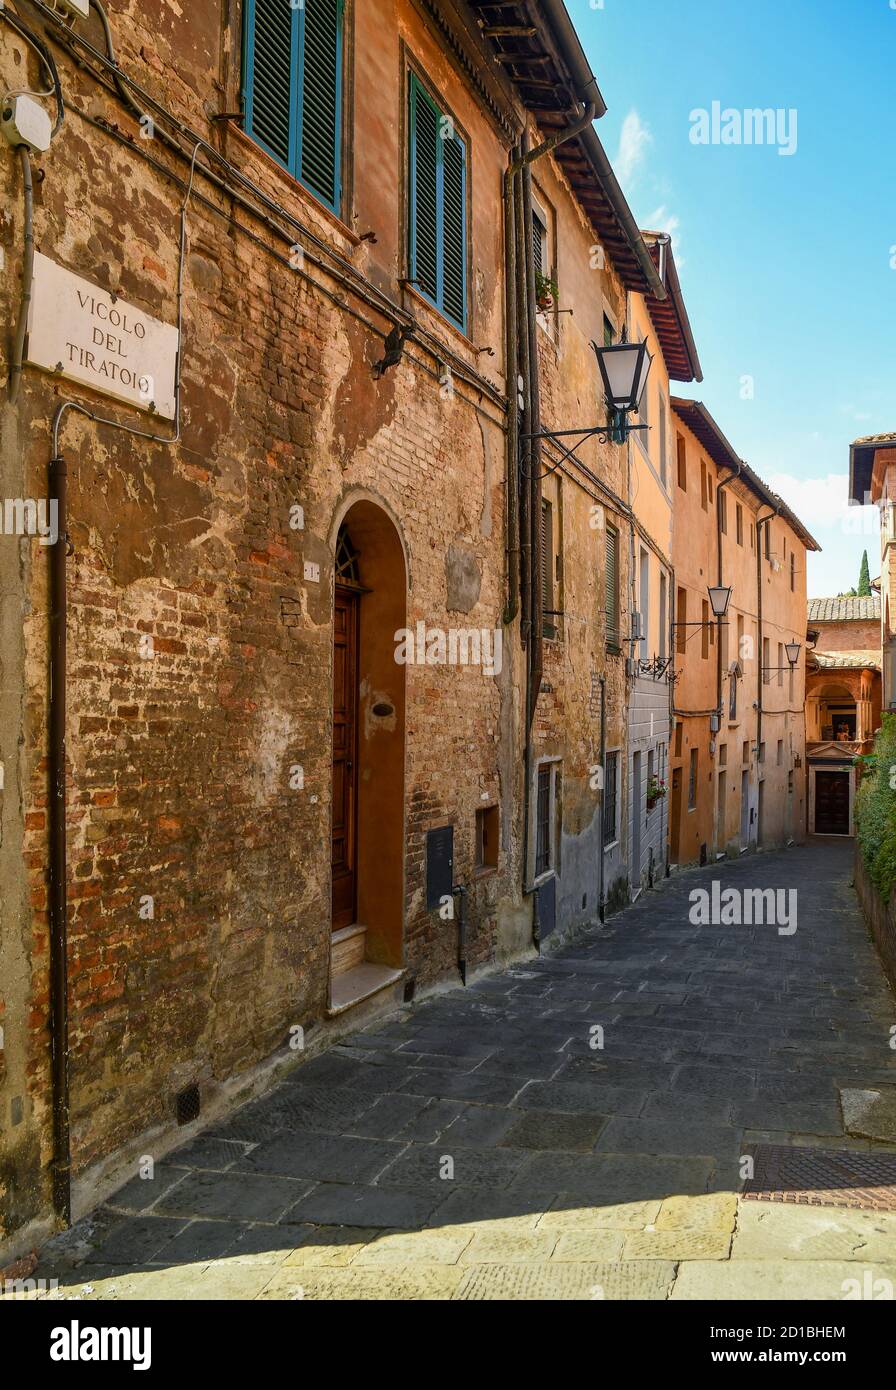 Vue sur Vicolo del Tiratoio, une ruelle étroite dans le centre historique de Sienne, dans le passé lieu de la transformation du textile, Toscane, Italie Banque D'Images